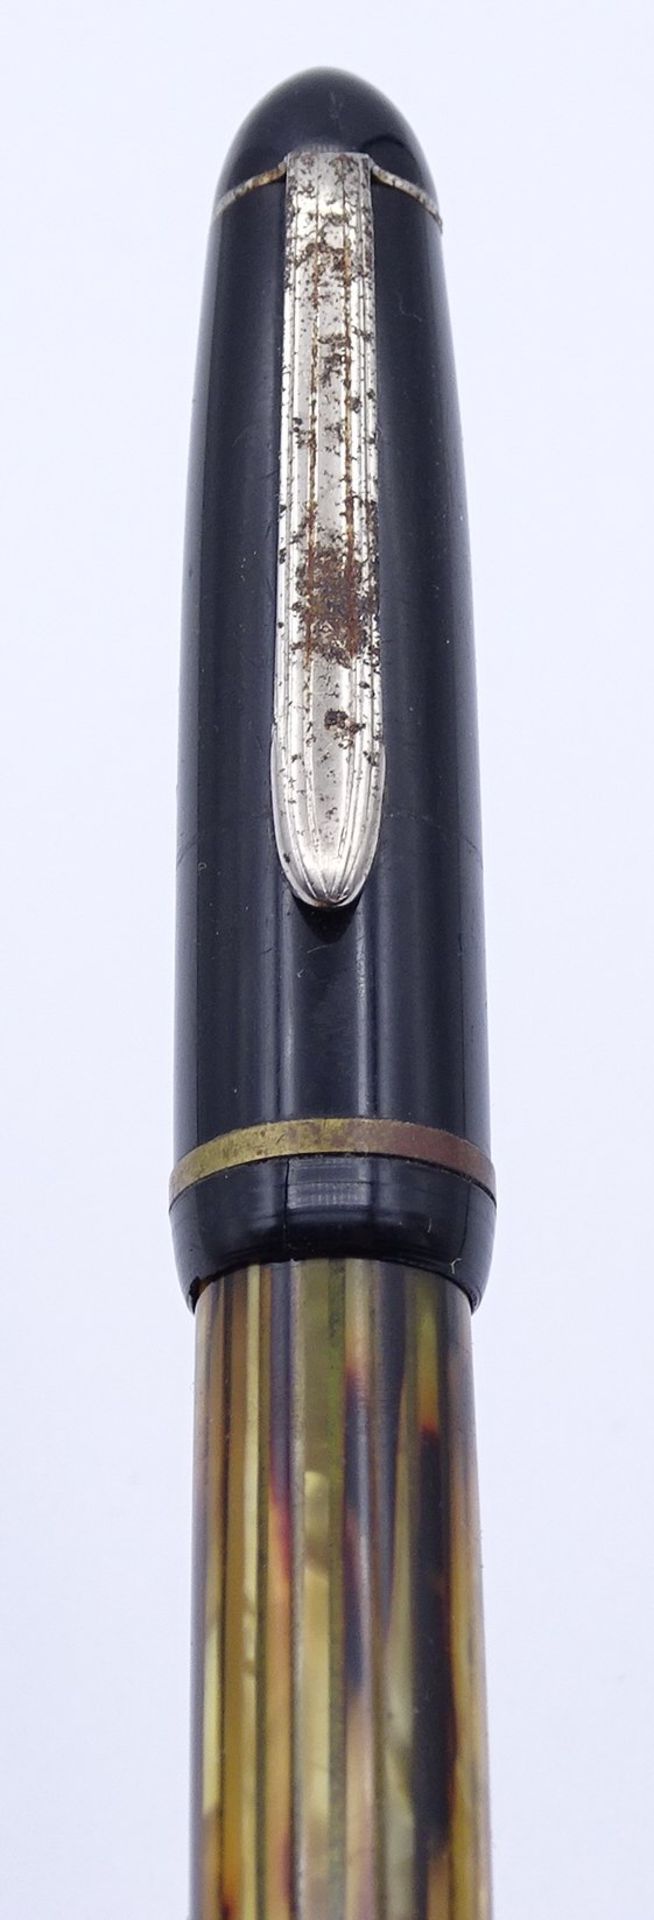 Pelikan Füller, GG Feder 585/000 Stärke F, Gebrauchsspuren, Deckel wohl nicht passend - Image 5 of 5